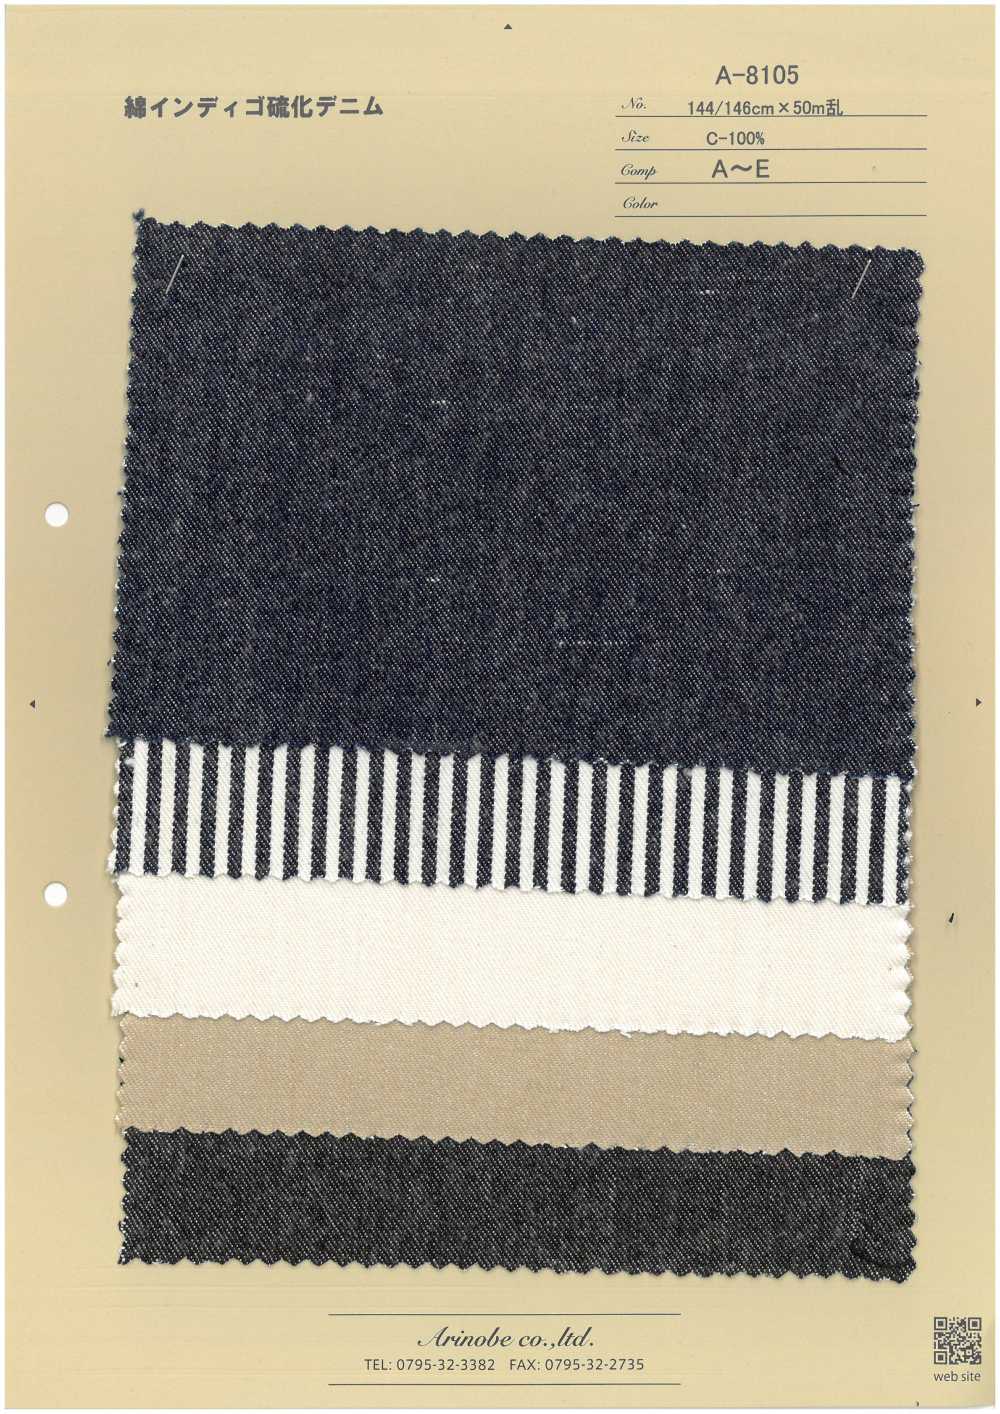 A-8105 Jeans De Algodão índigo Sulfeto[Têxtil / Tecido] ARINOBE CO., LTD.